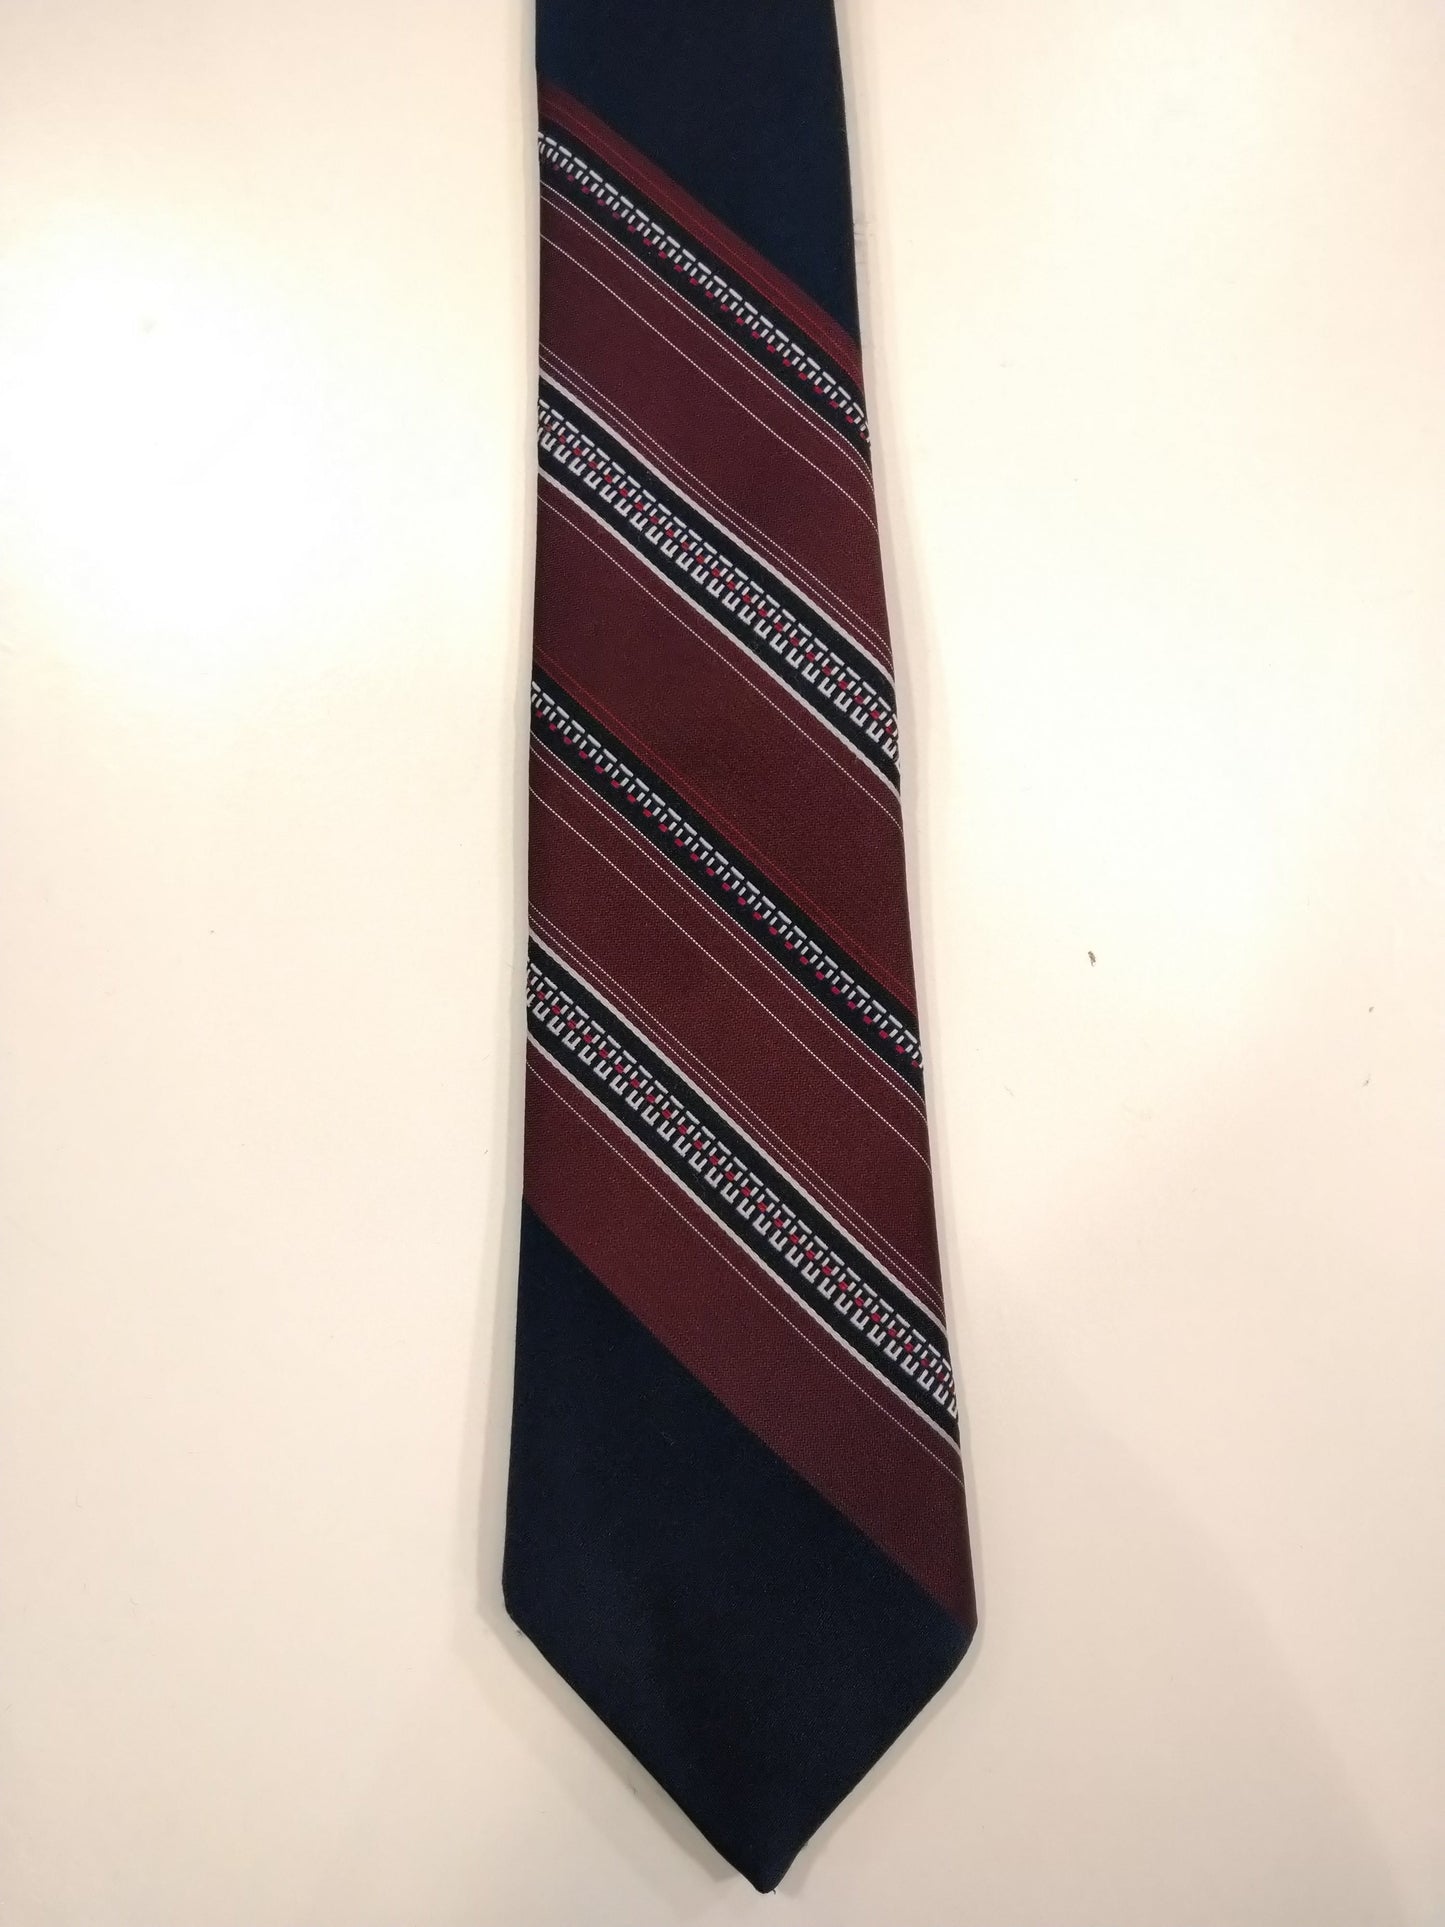 Pierre d'Este Polyester Tie. Negro separado con motivo de franja marrón.